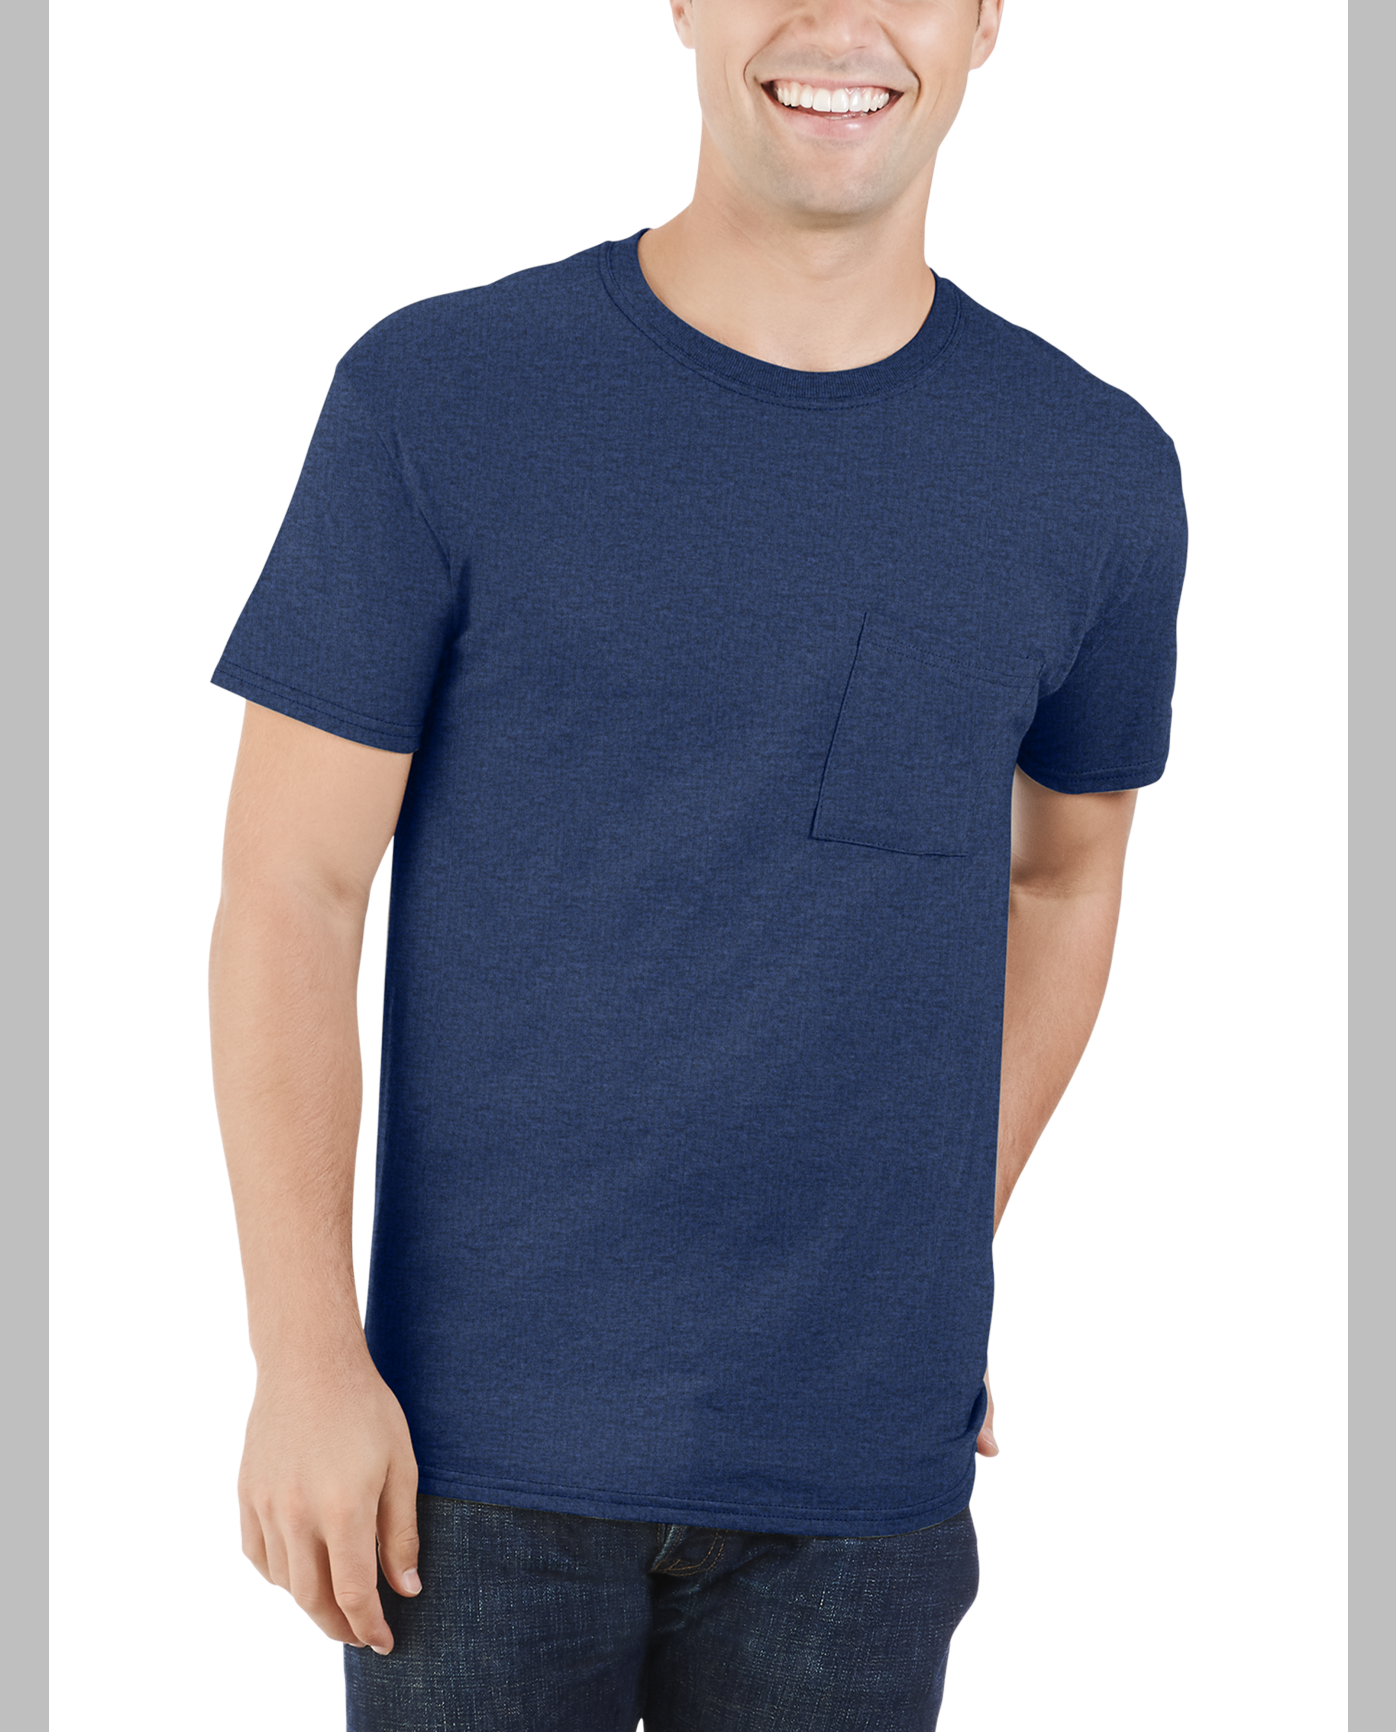 Pocket t-shirt men's US Navy design front pocket tee for men dark gray shirt